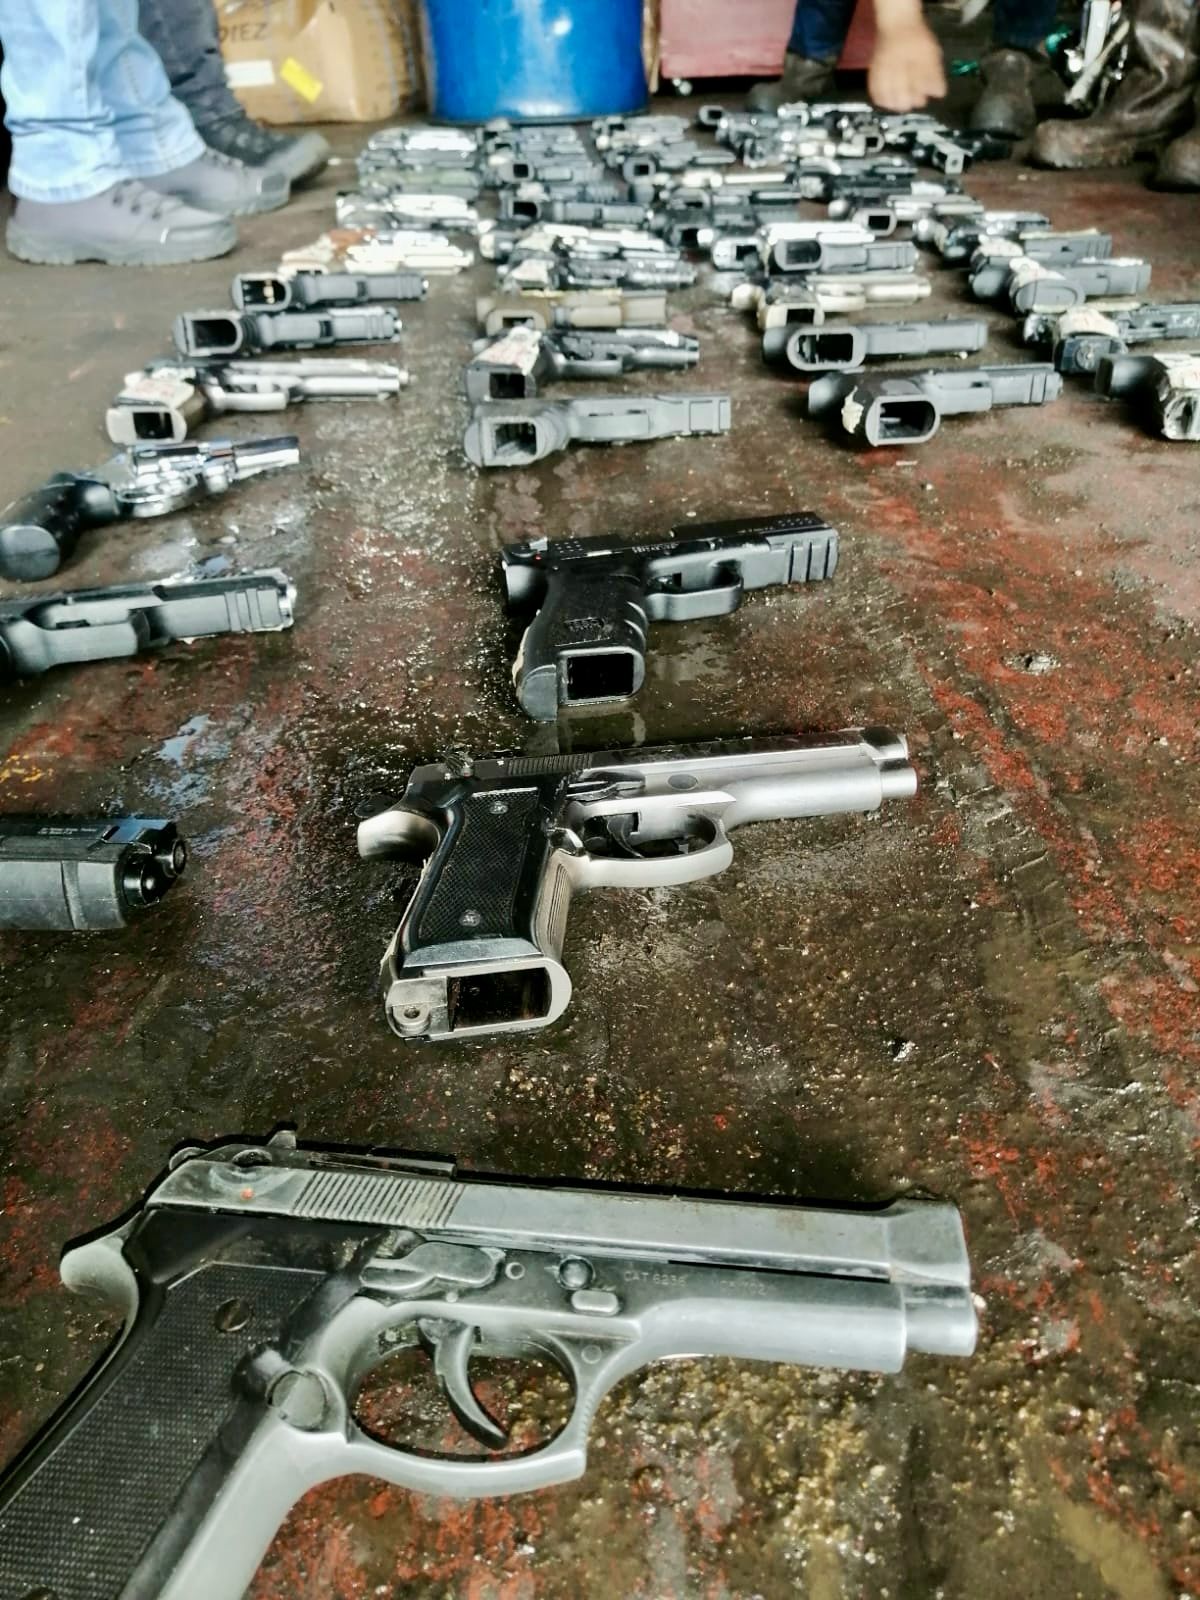 Policía destruyó más de 300 armas traumáticas incautadas en operativos contra el crimen en Popayán